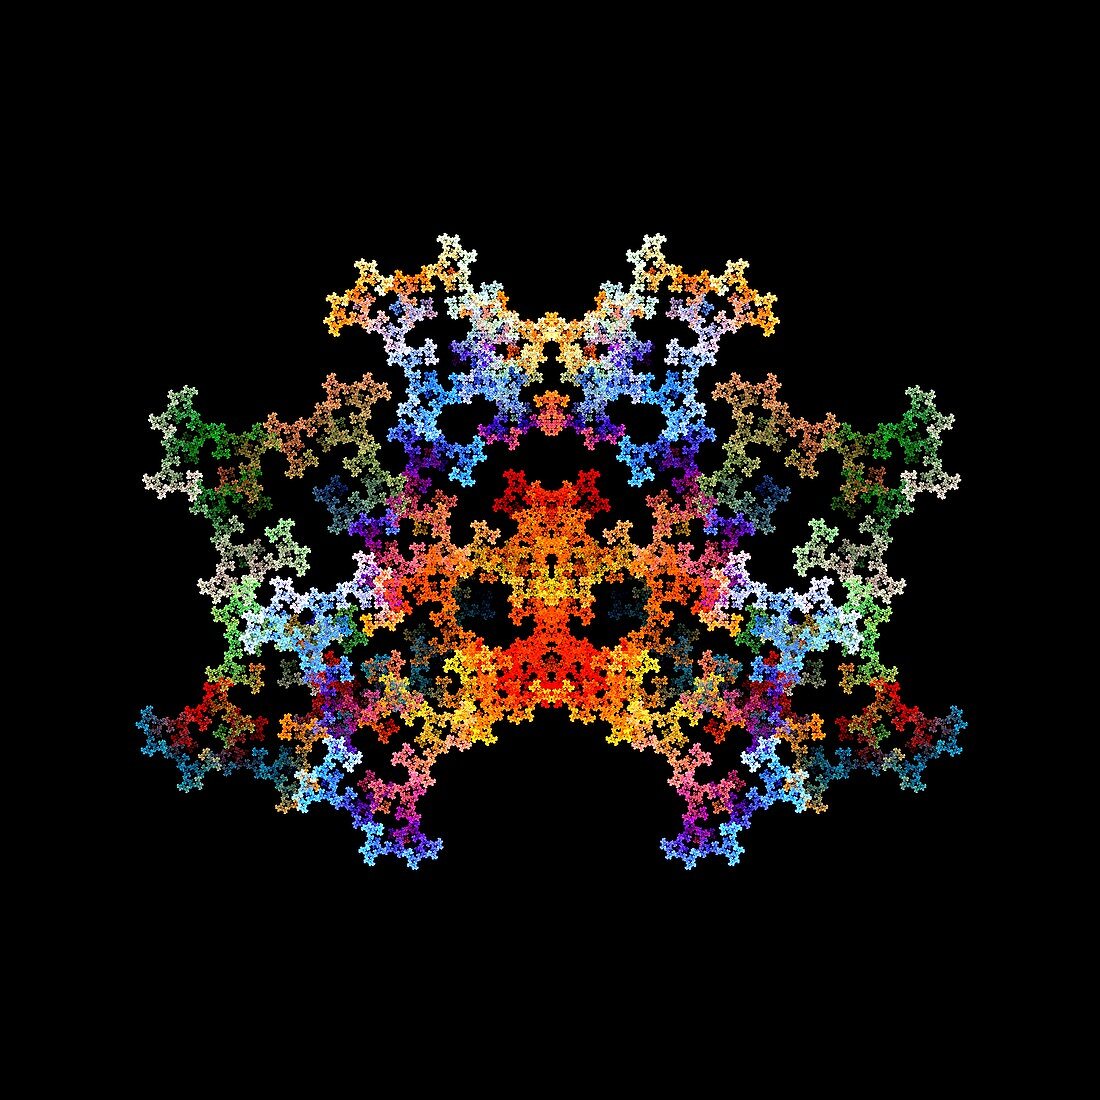 Crystal, fractal illustration